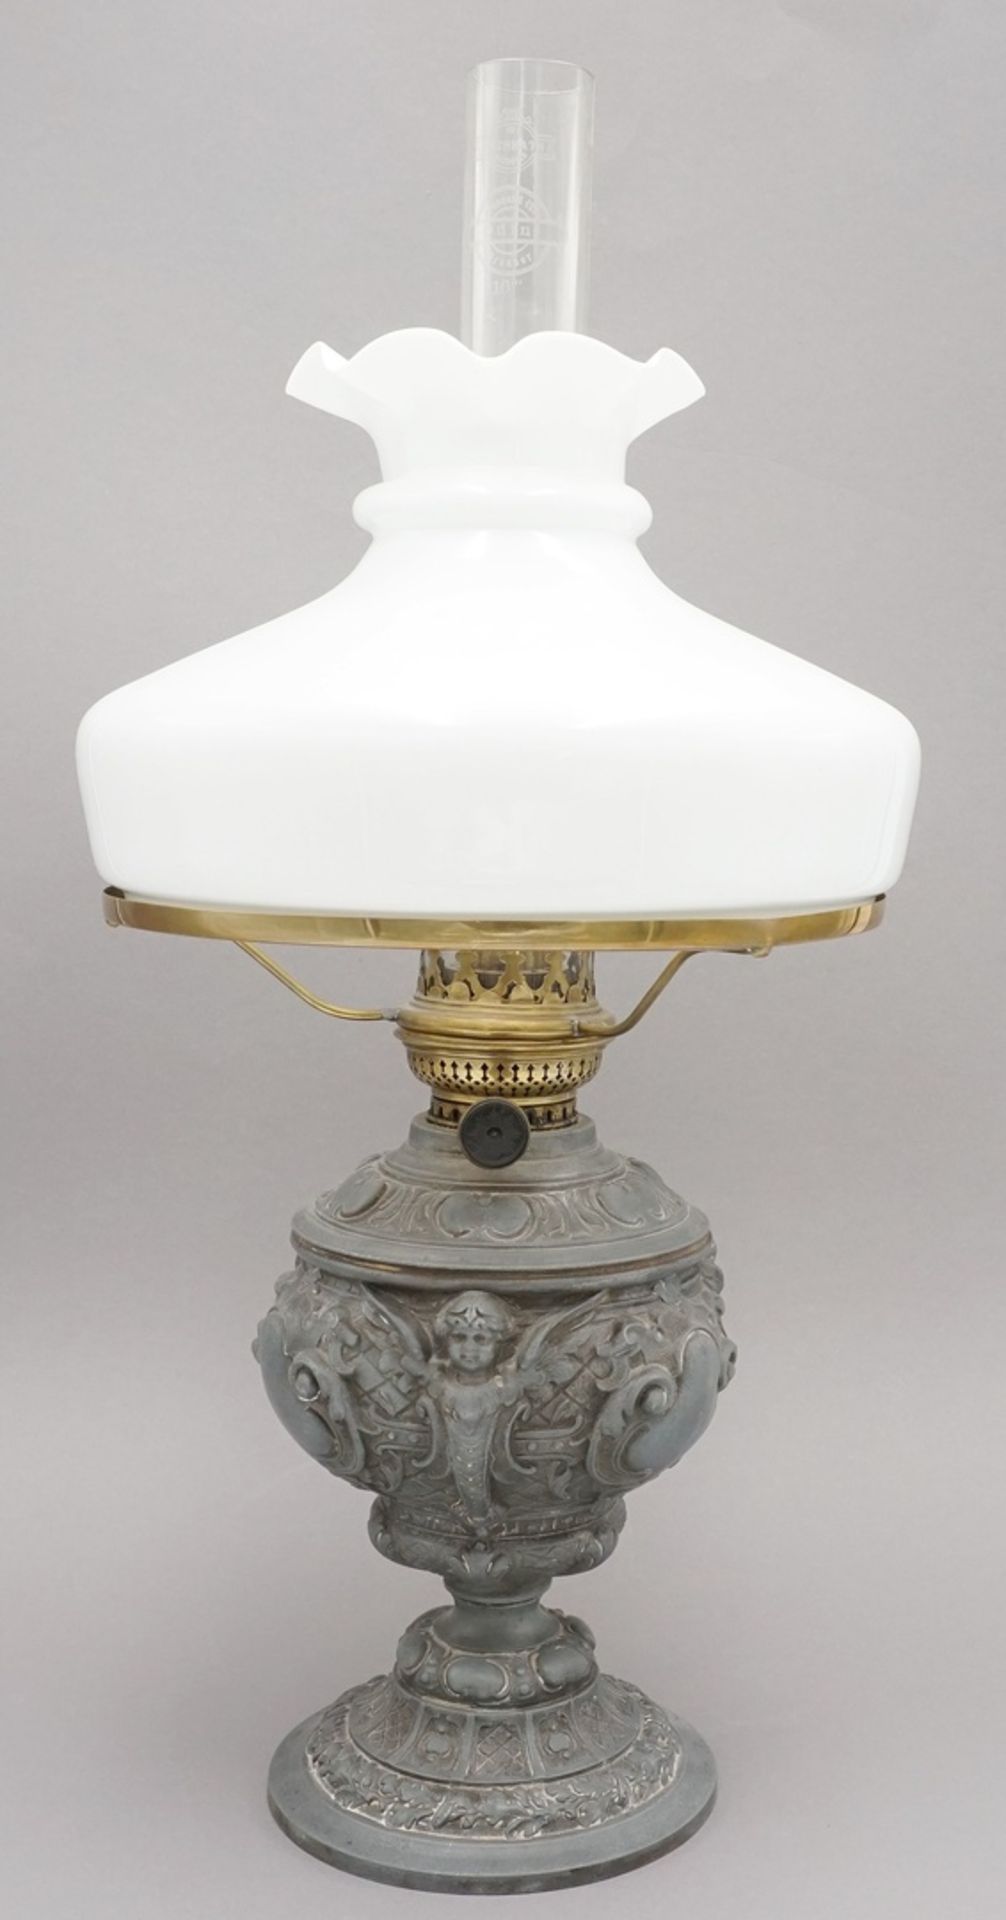 Petroleumlampe, um 1880Gründerzeit, Zinkspritzguss, Korpus mit üppigen Putten und Rocaillen,